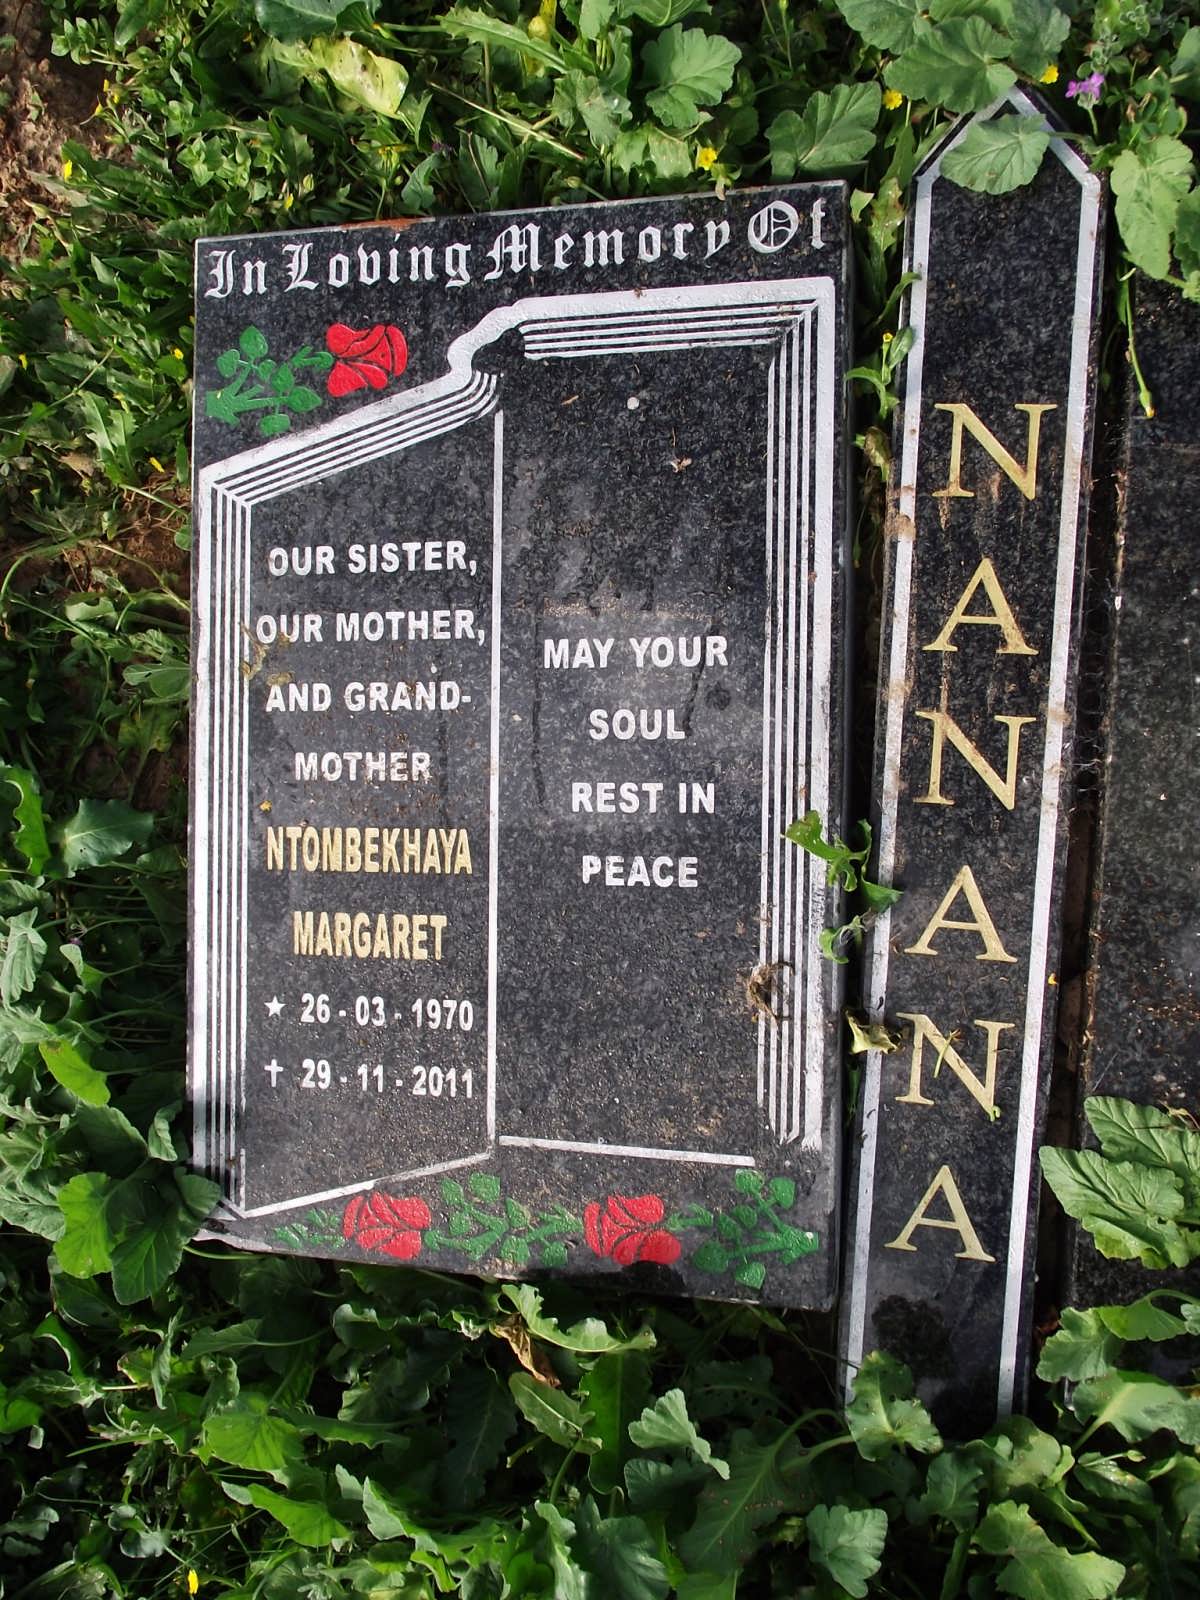 NANANA Ntombekhaya Margaret 1970-2011